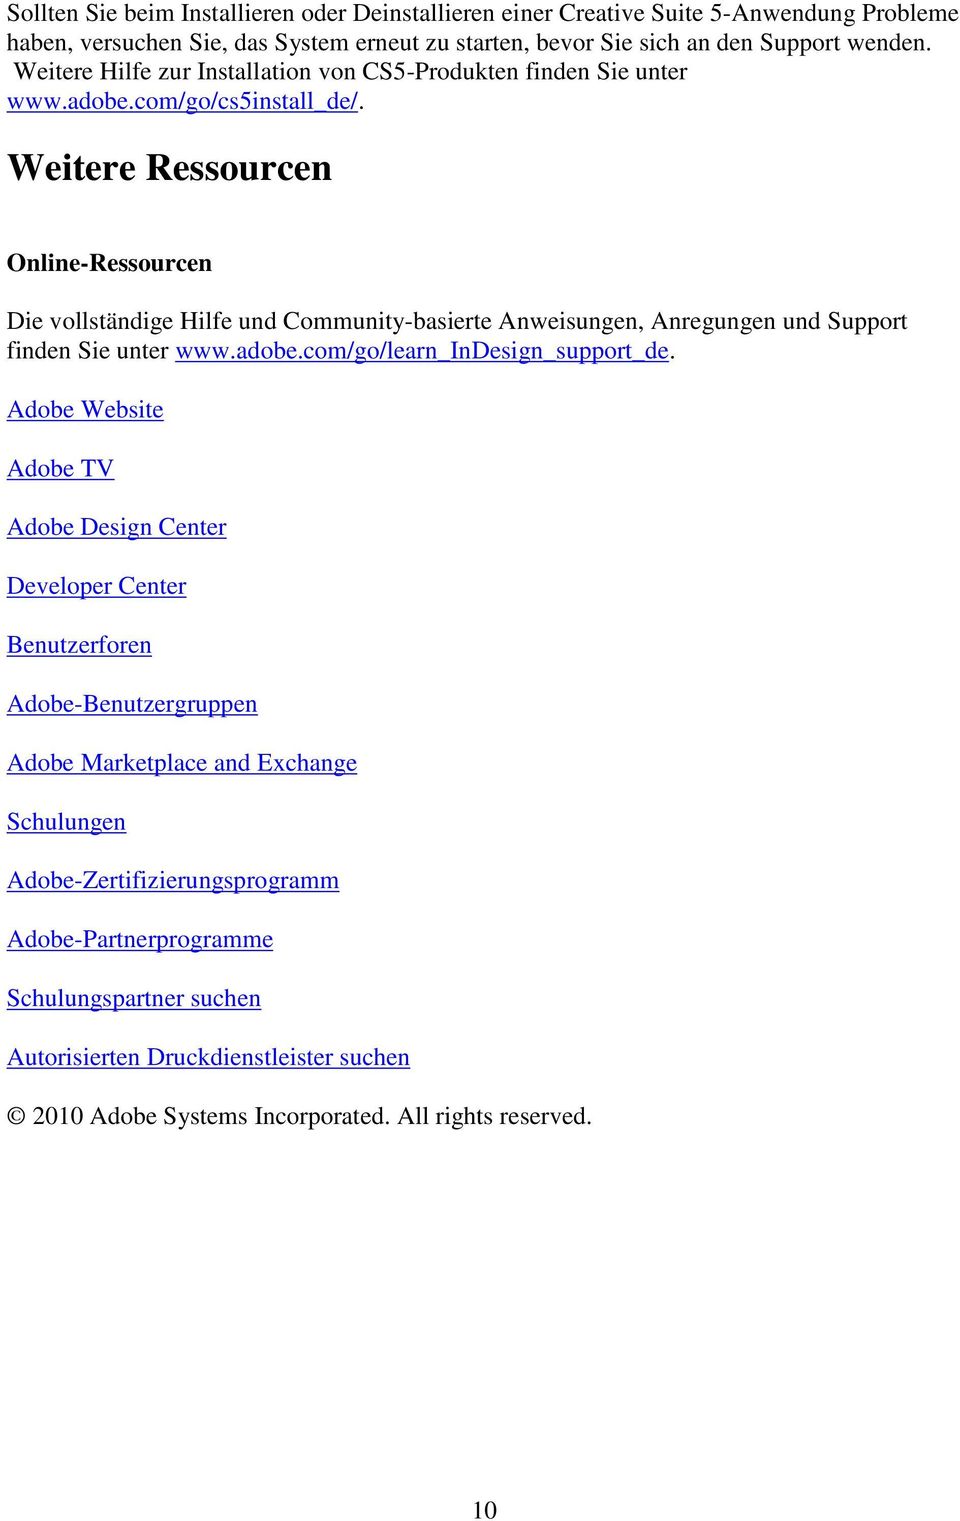 Weitere Ressourcen Online-Ressourcen Die vollständige Hilfe und Community-basierte Anweisungen, Anregungen und Support finden Sie unter www.adobe.com/go/learn_indesign_support_de.